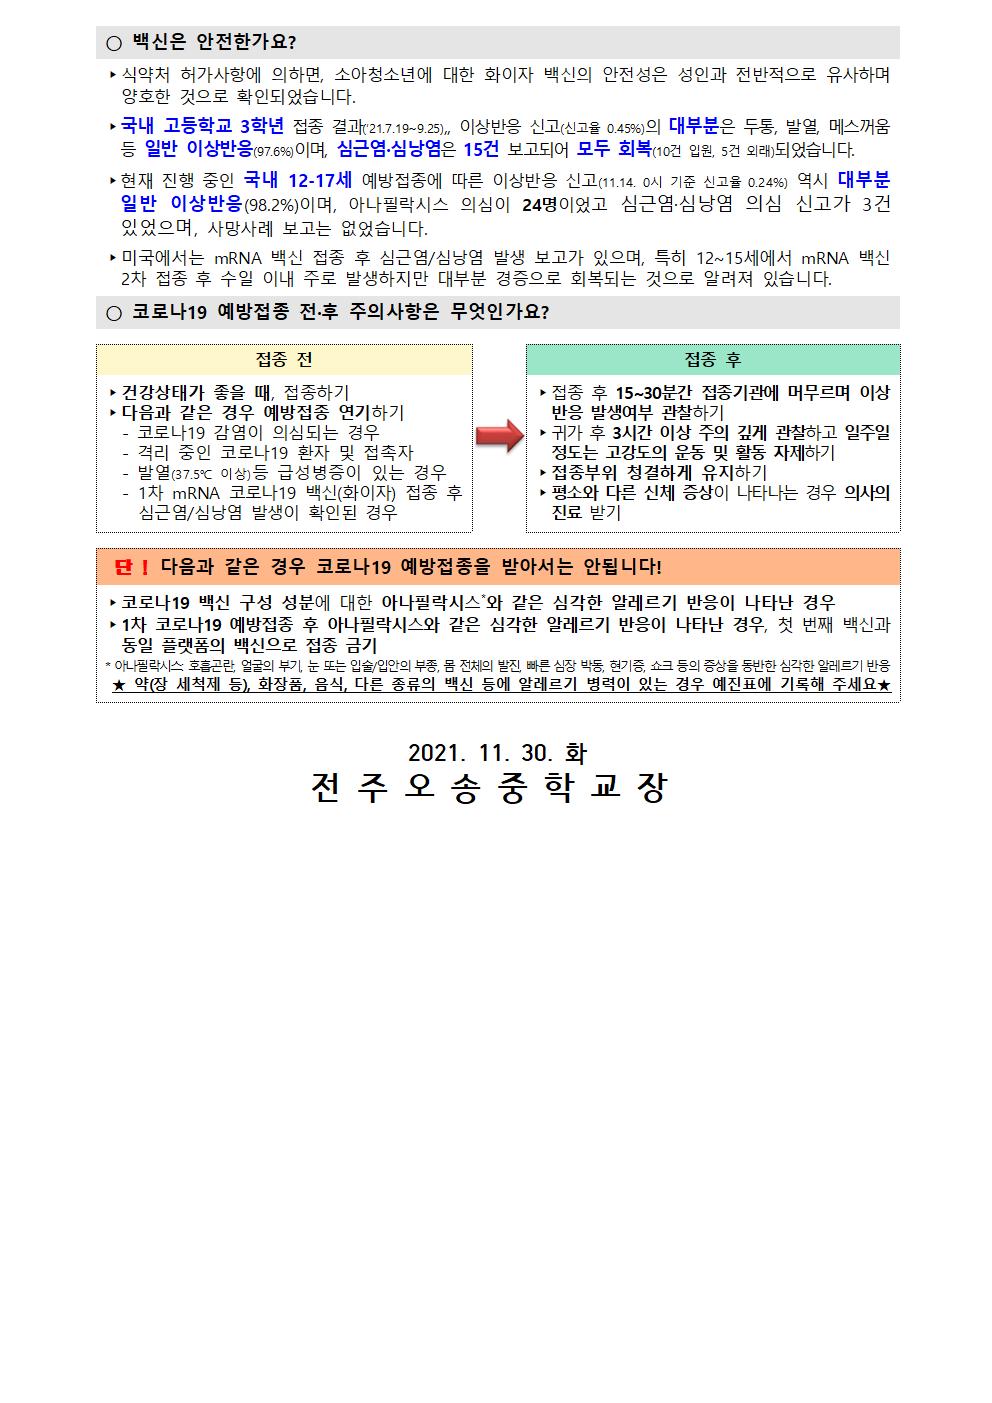 코로나 19 예방접종 추가 안내 가정통신문(11월)003